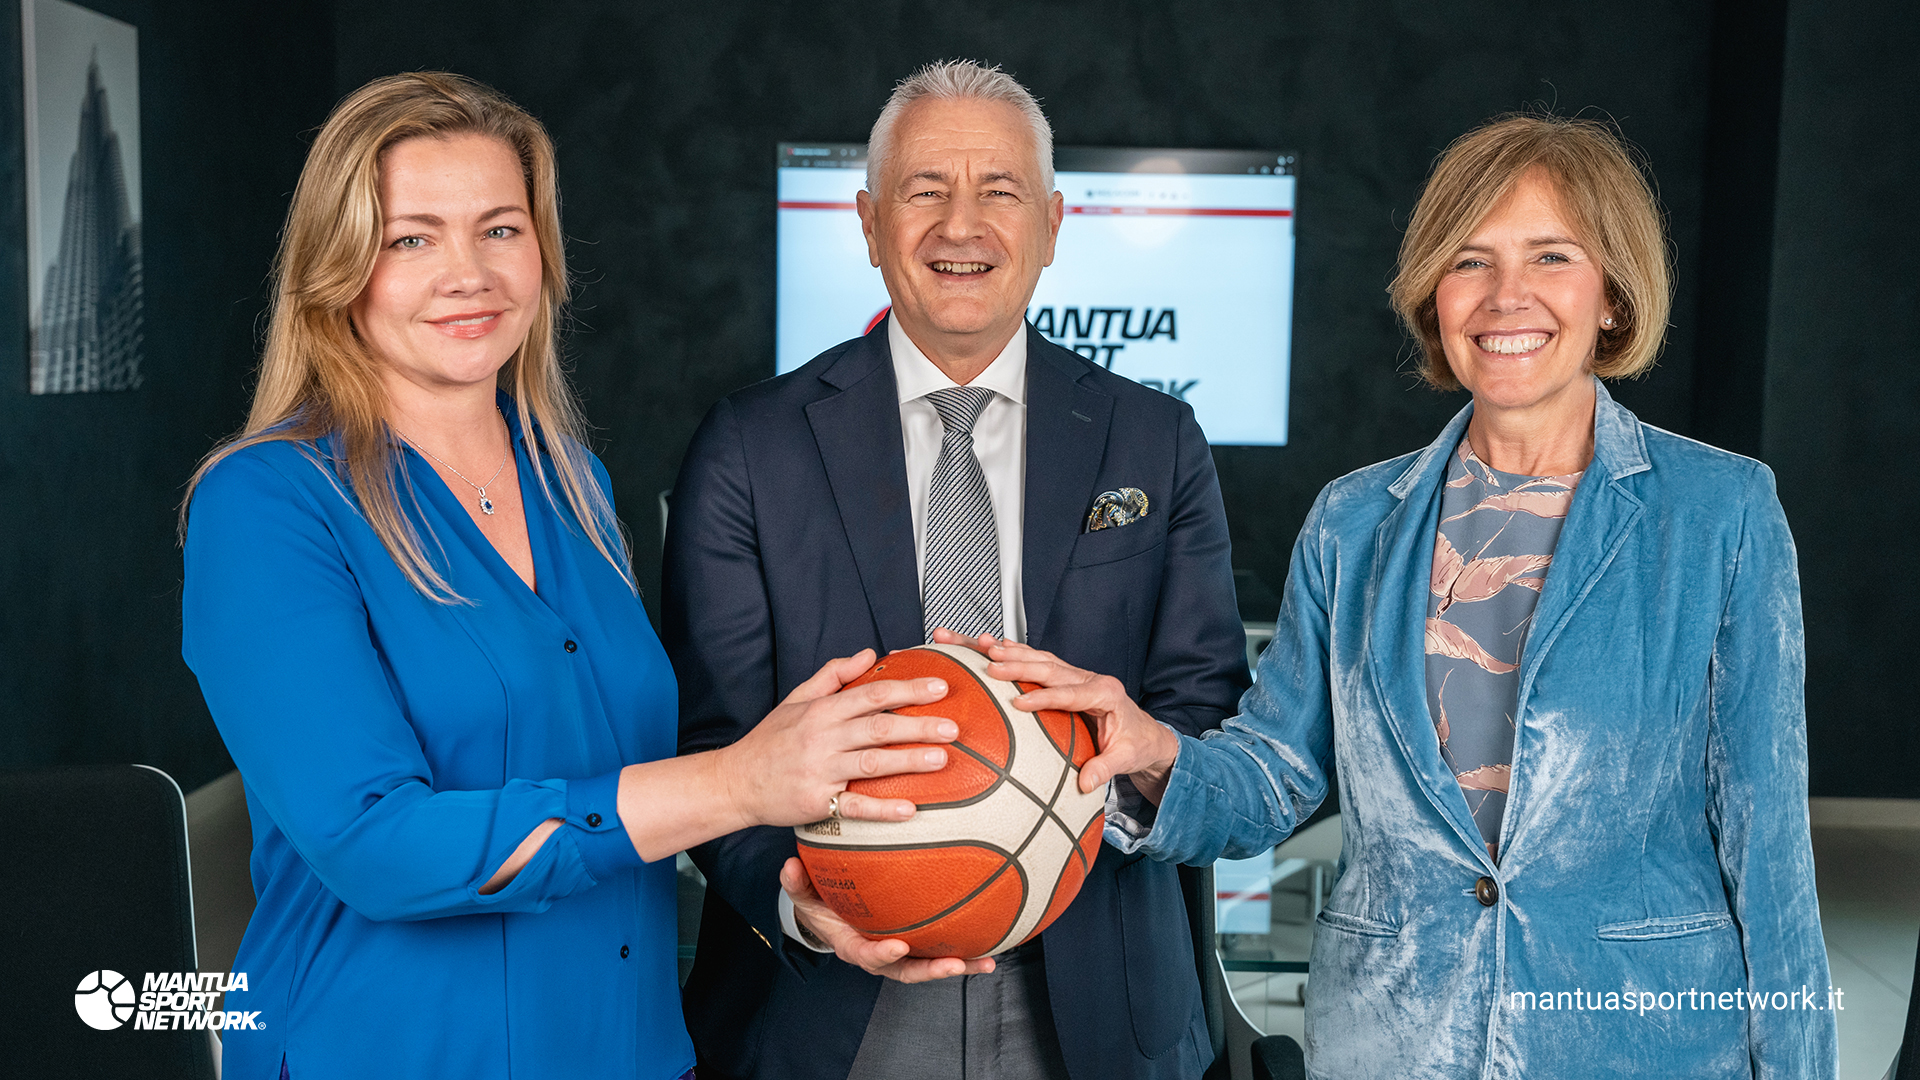 Mantua Sport Network<br> Unire lo sport all'eccellenza aziendale